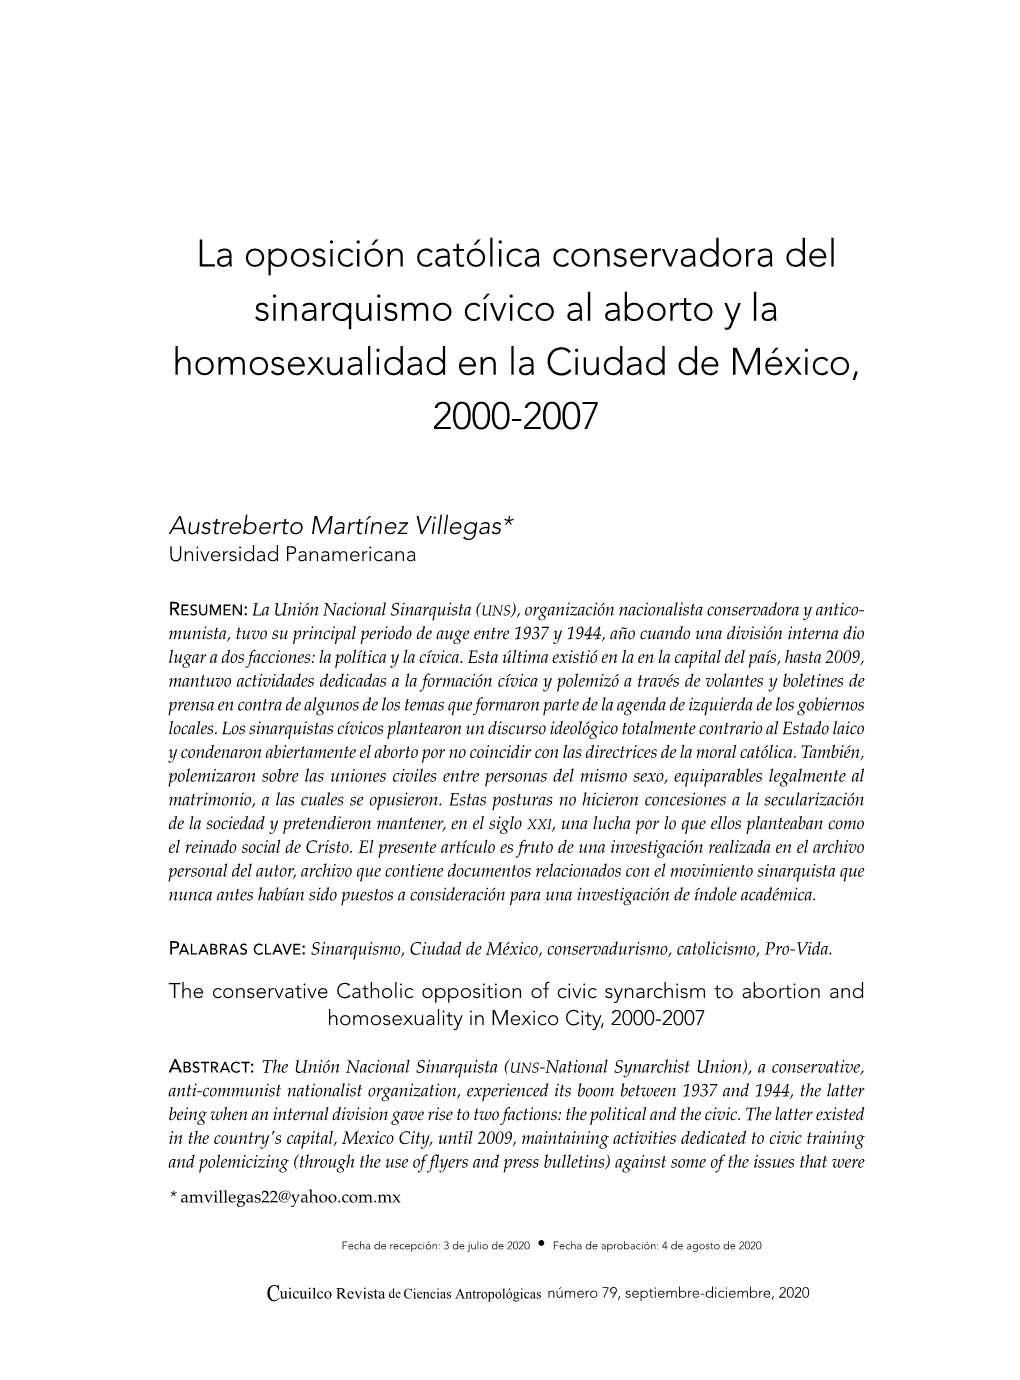 La Oposición Católica Conservadora Del Sinarquismo Cívico Al Aborto Y La Homosexualidad En La Ciudad De México, 2000-2007